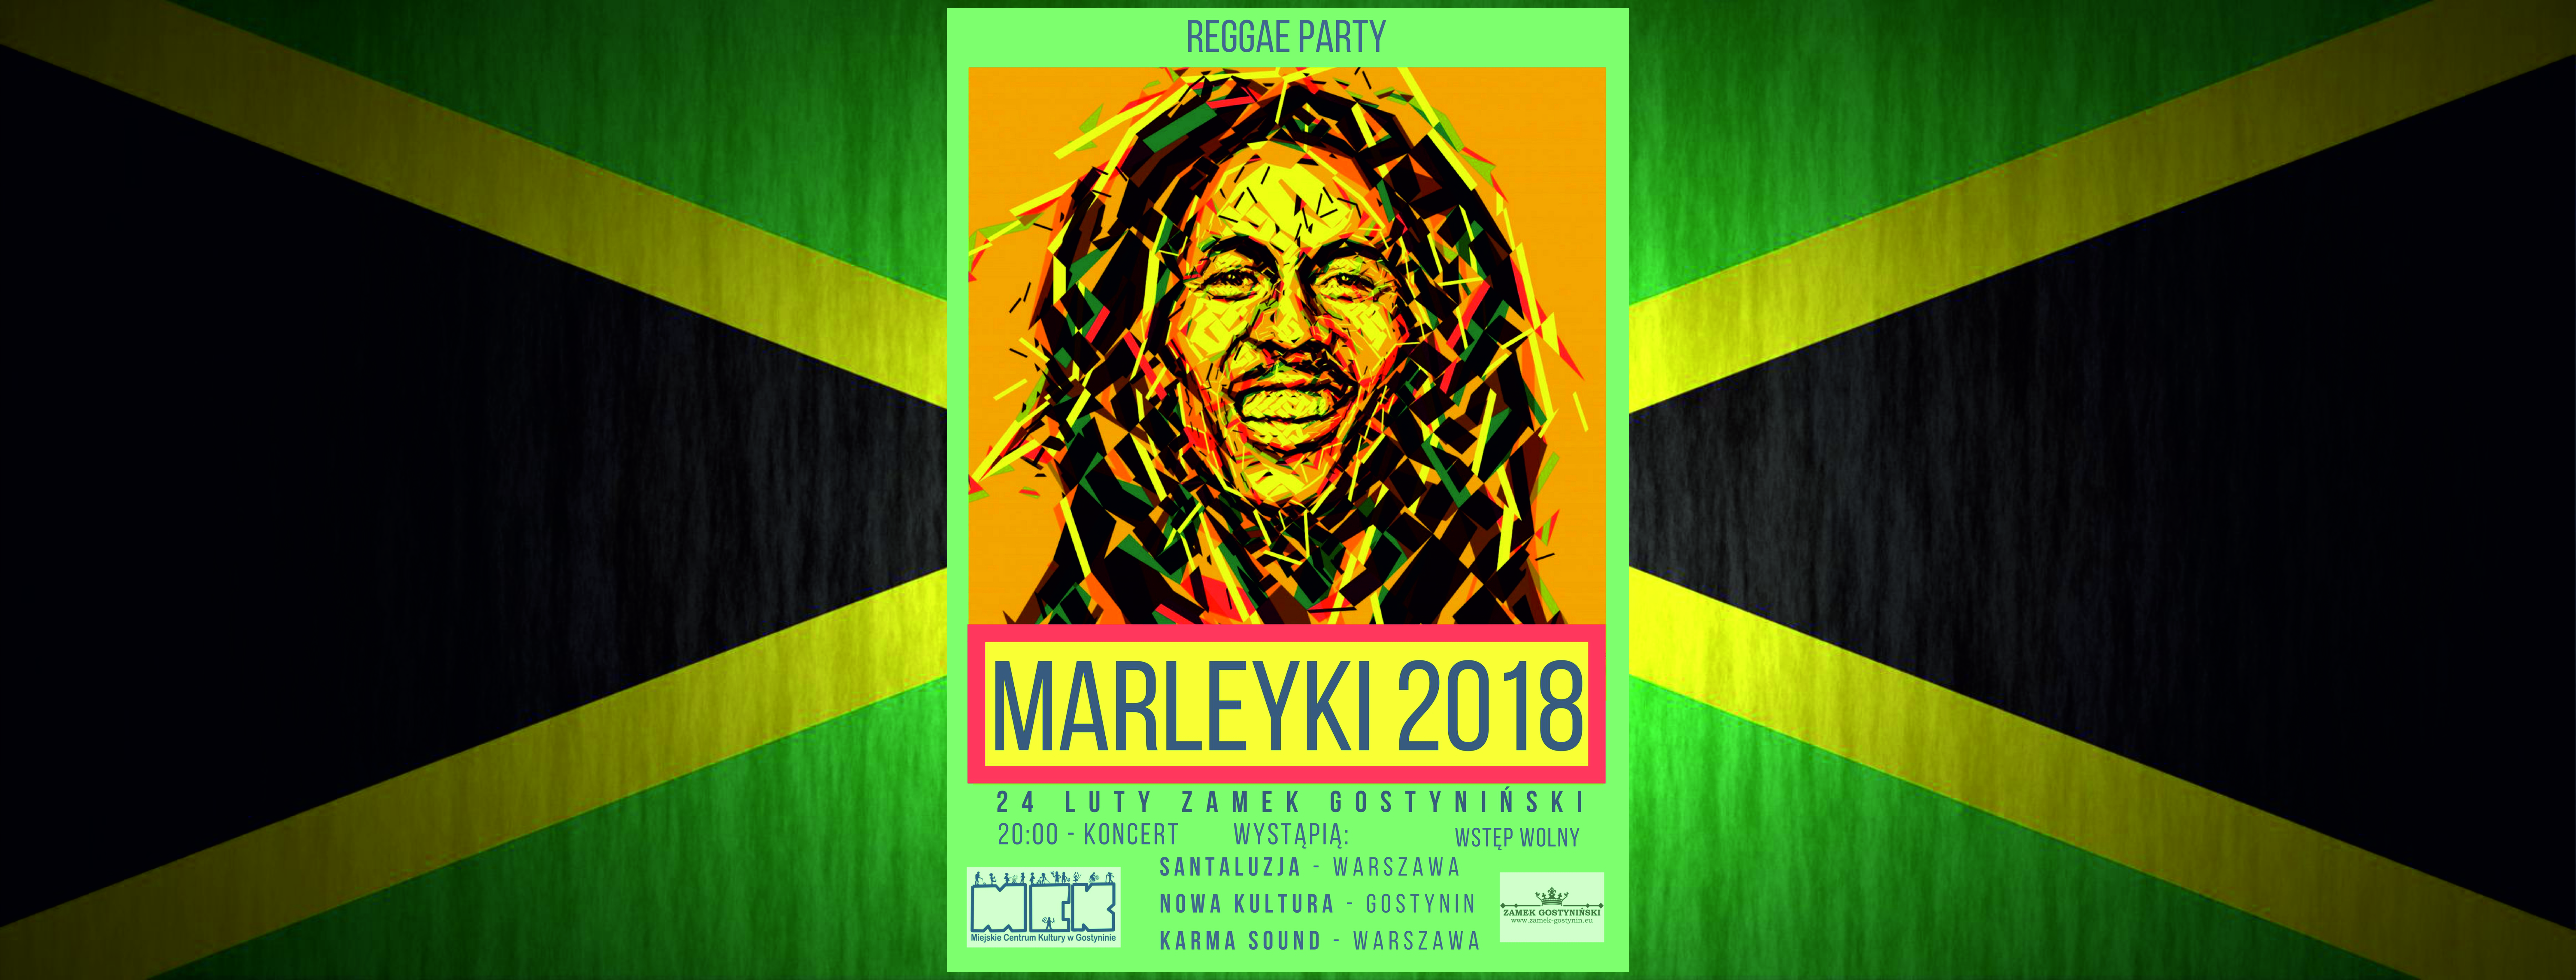 Reggae Party – MARLEYKI 2018 Gostynin